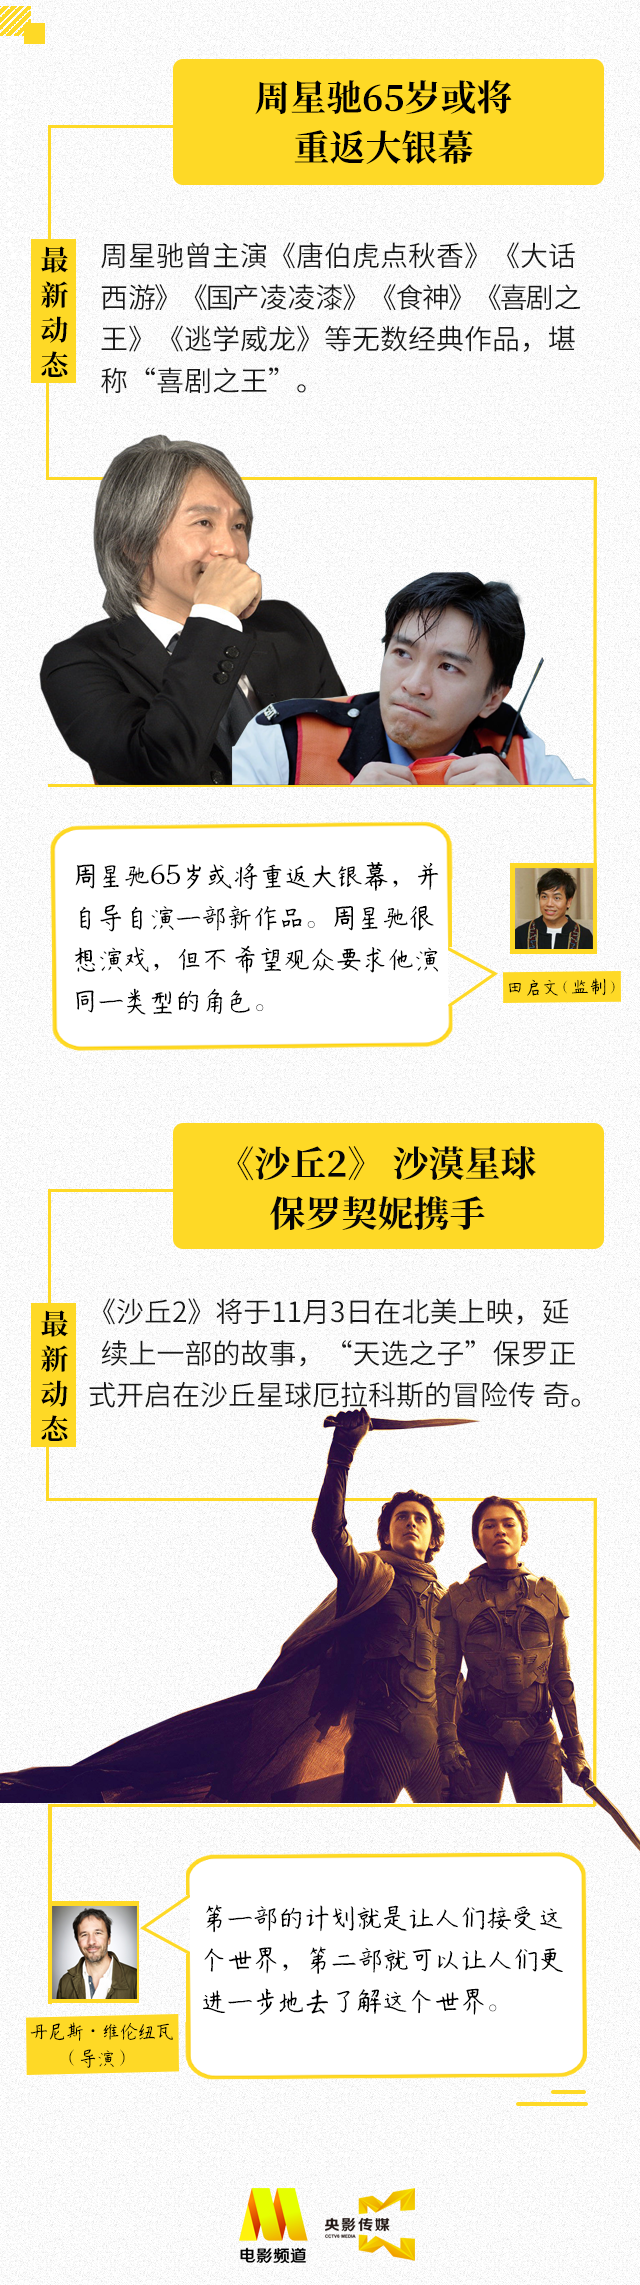 朱一龙奚美娟获最受欢迎奖 周星驰或将重返大银幕